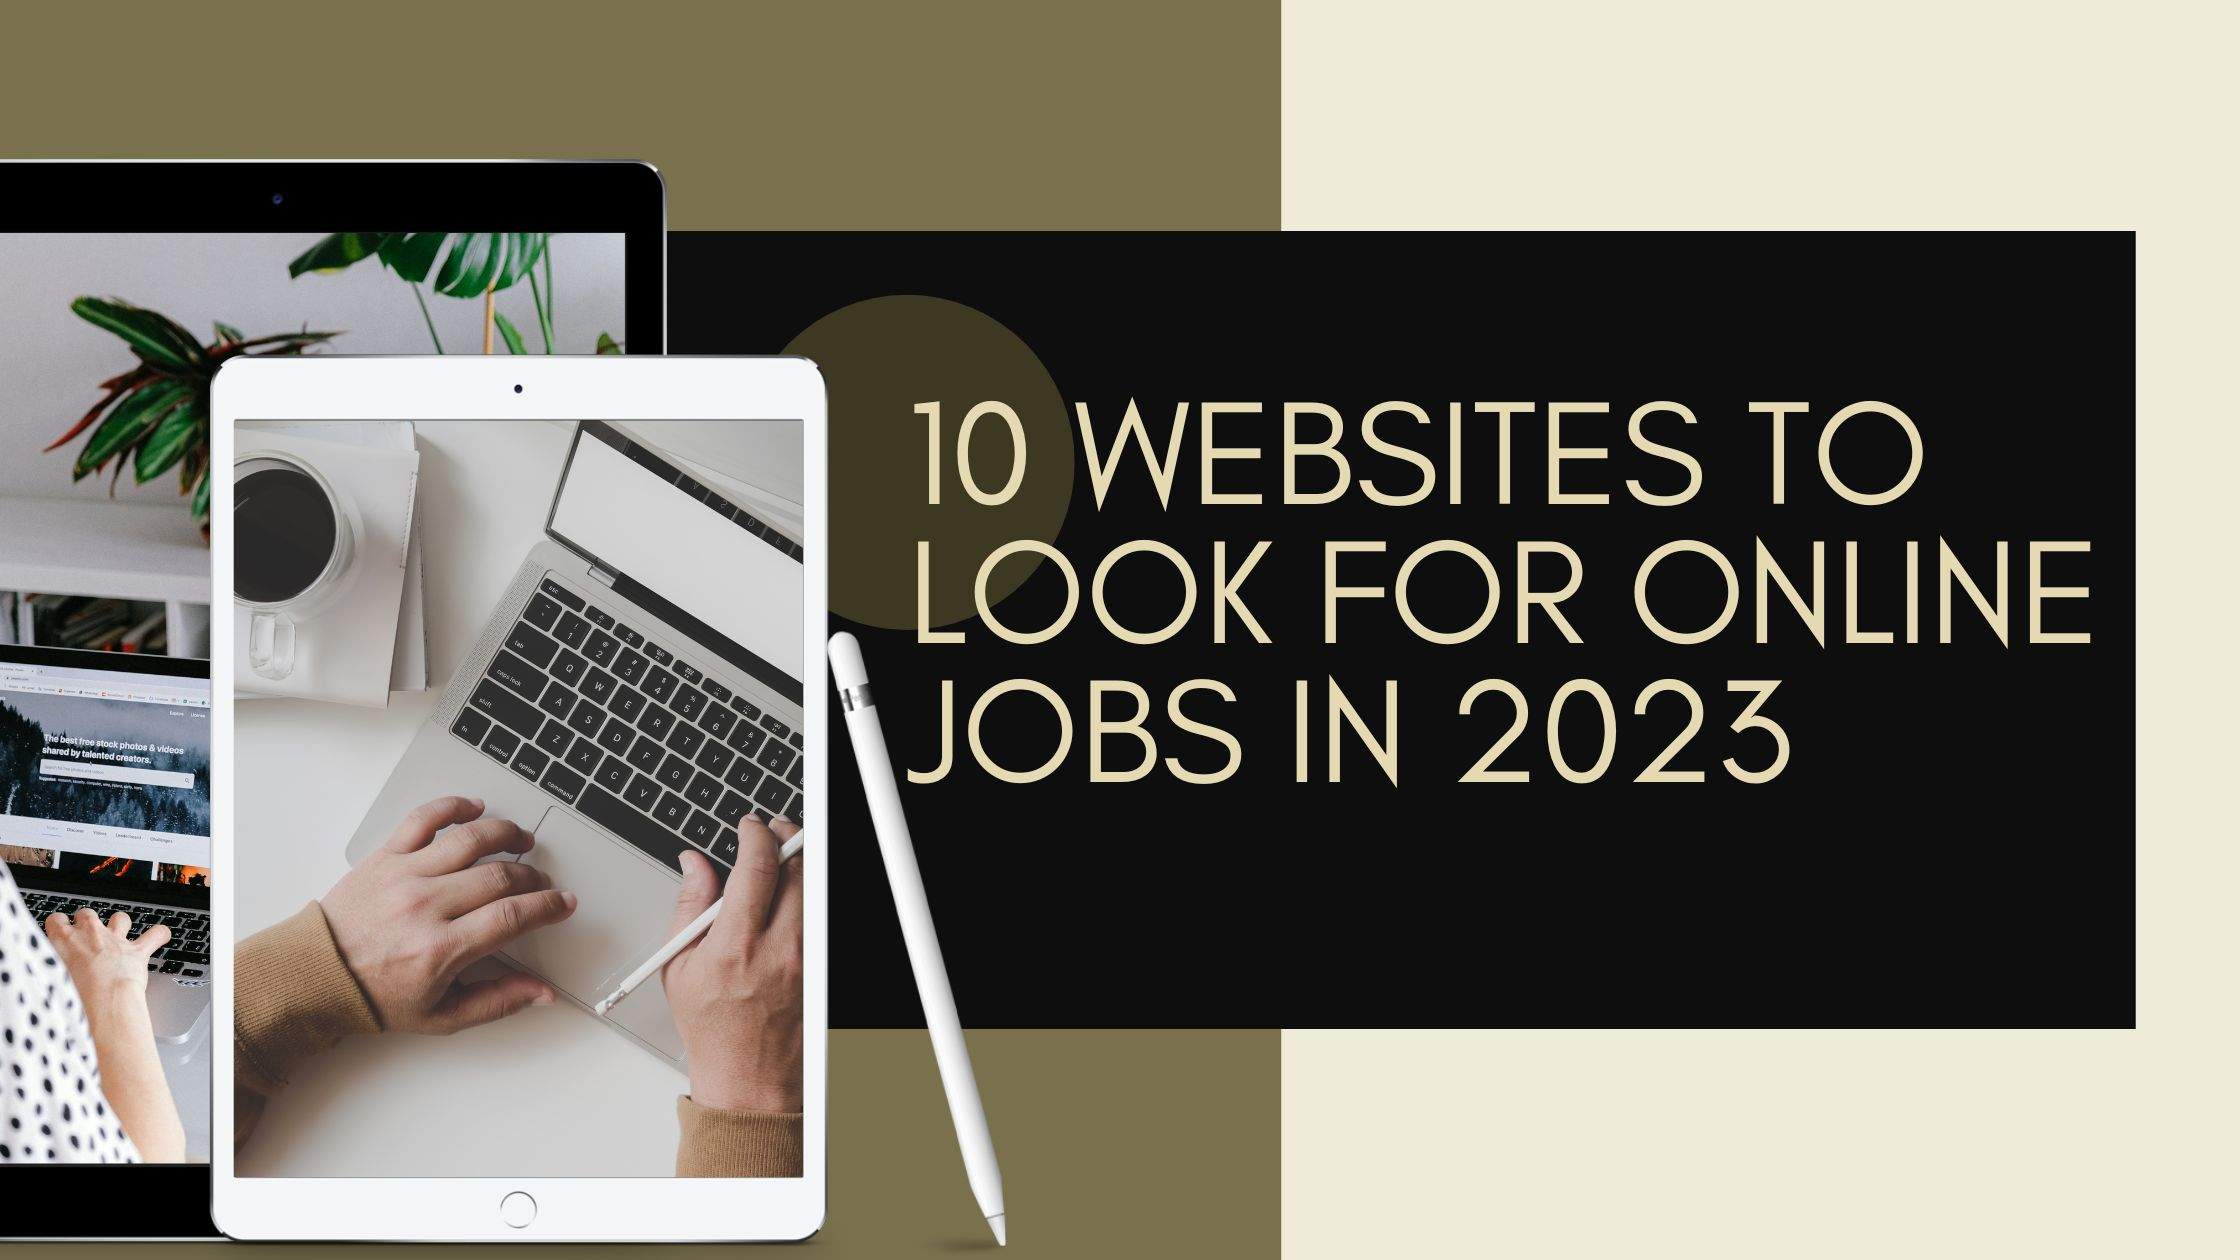 10 websites to look for online jobs in 2023